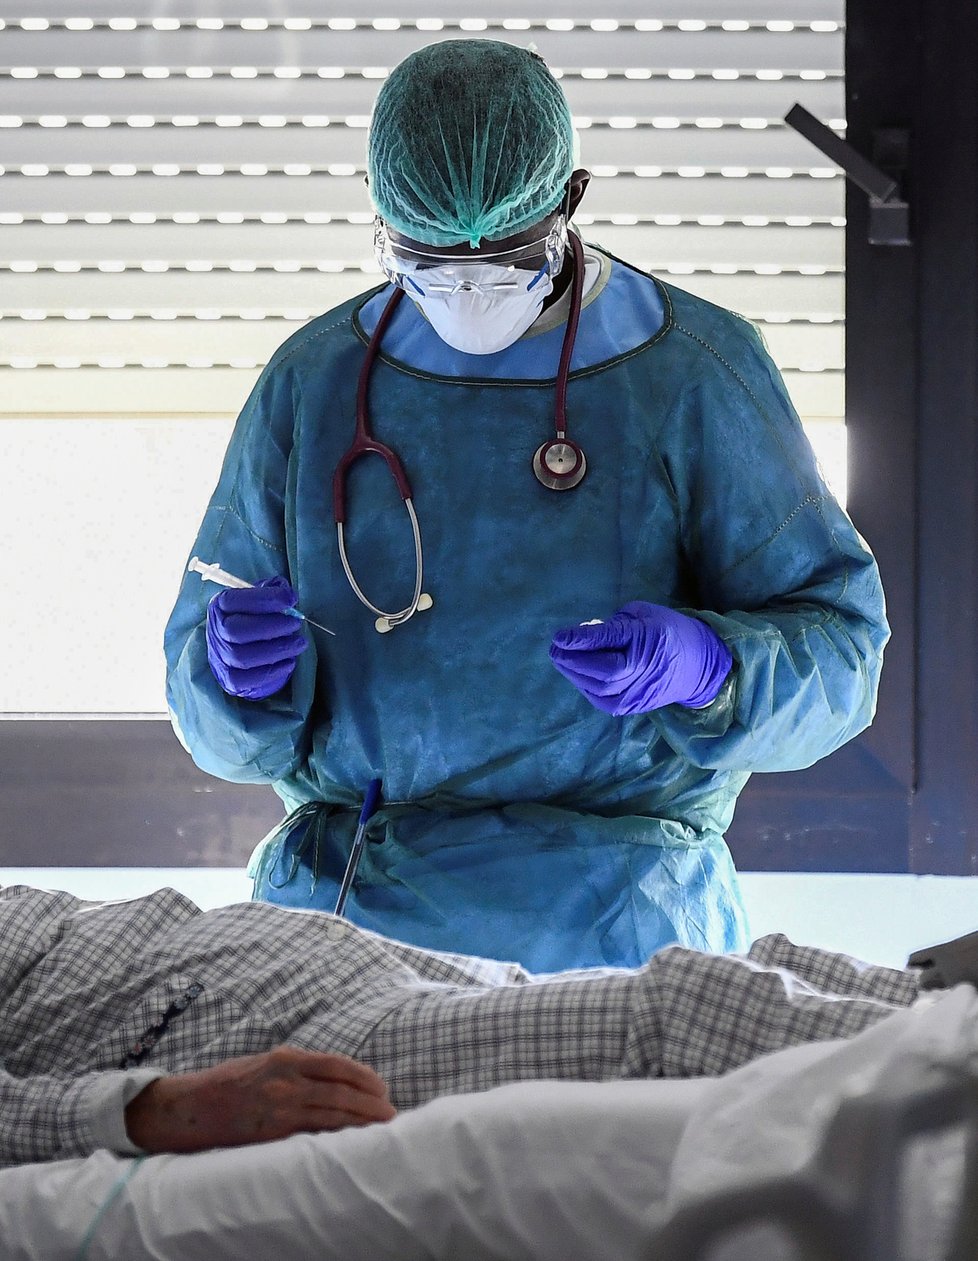 Během pandemie koronaviru platí přísná bezpečnostní a karanténní opatření po celém světě. Na snímku pacienti a zdravotníci z nemocnice v severoitalské Cremoně (19. 03. 2020).